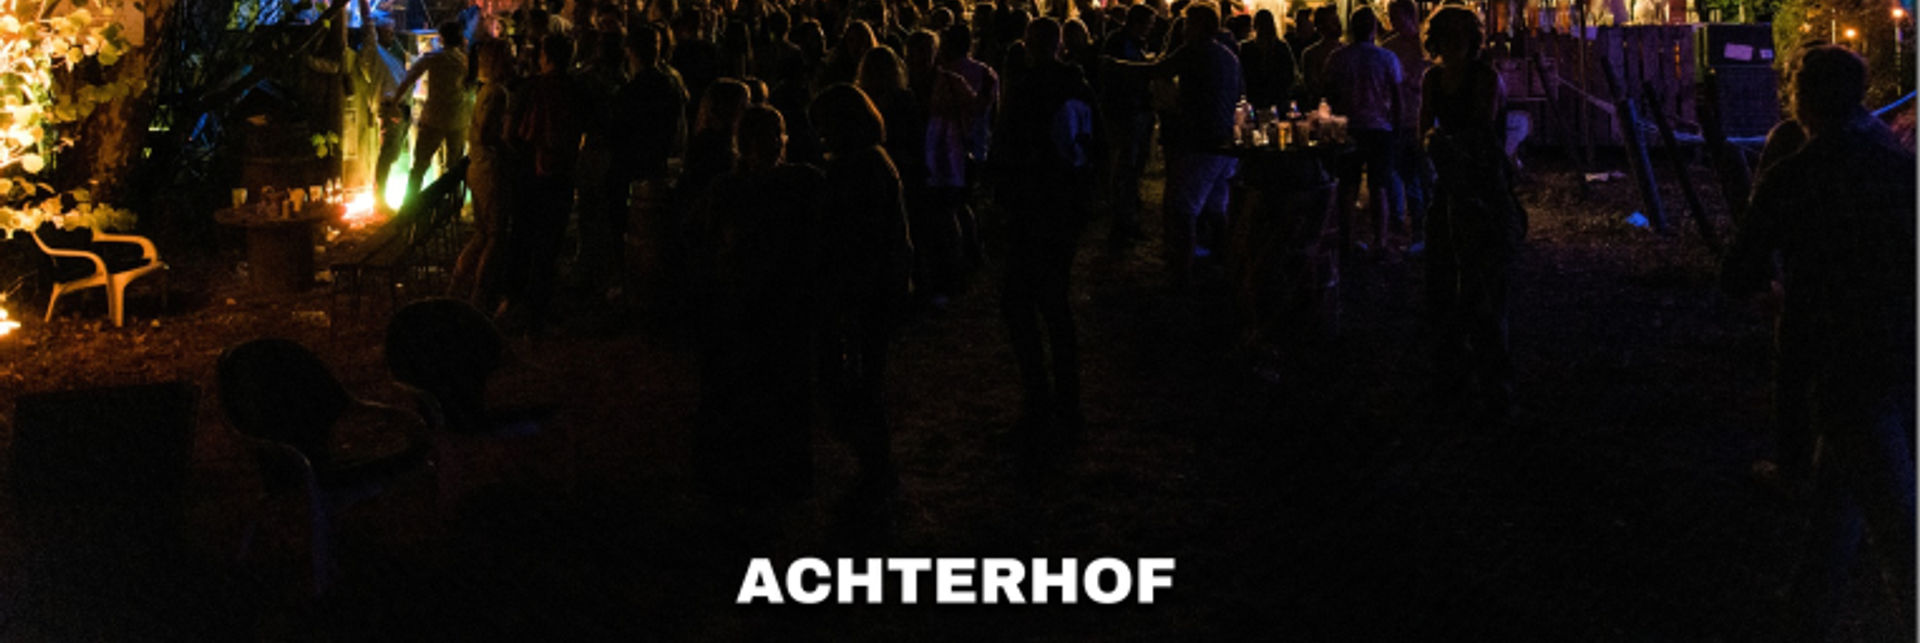 Achterhof